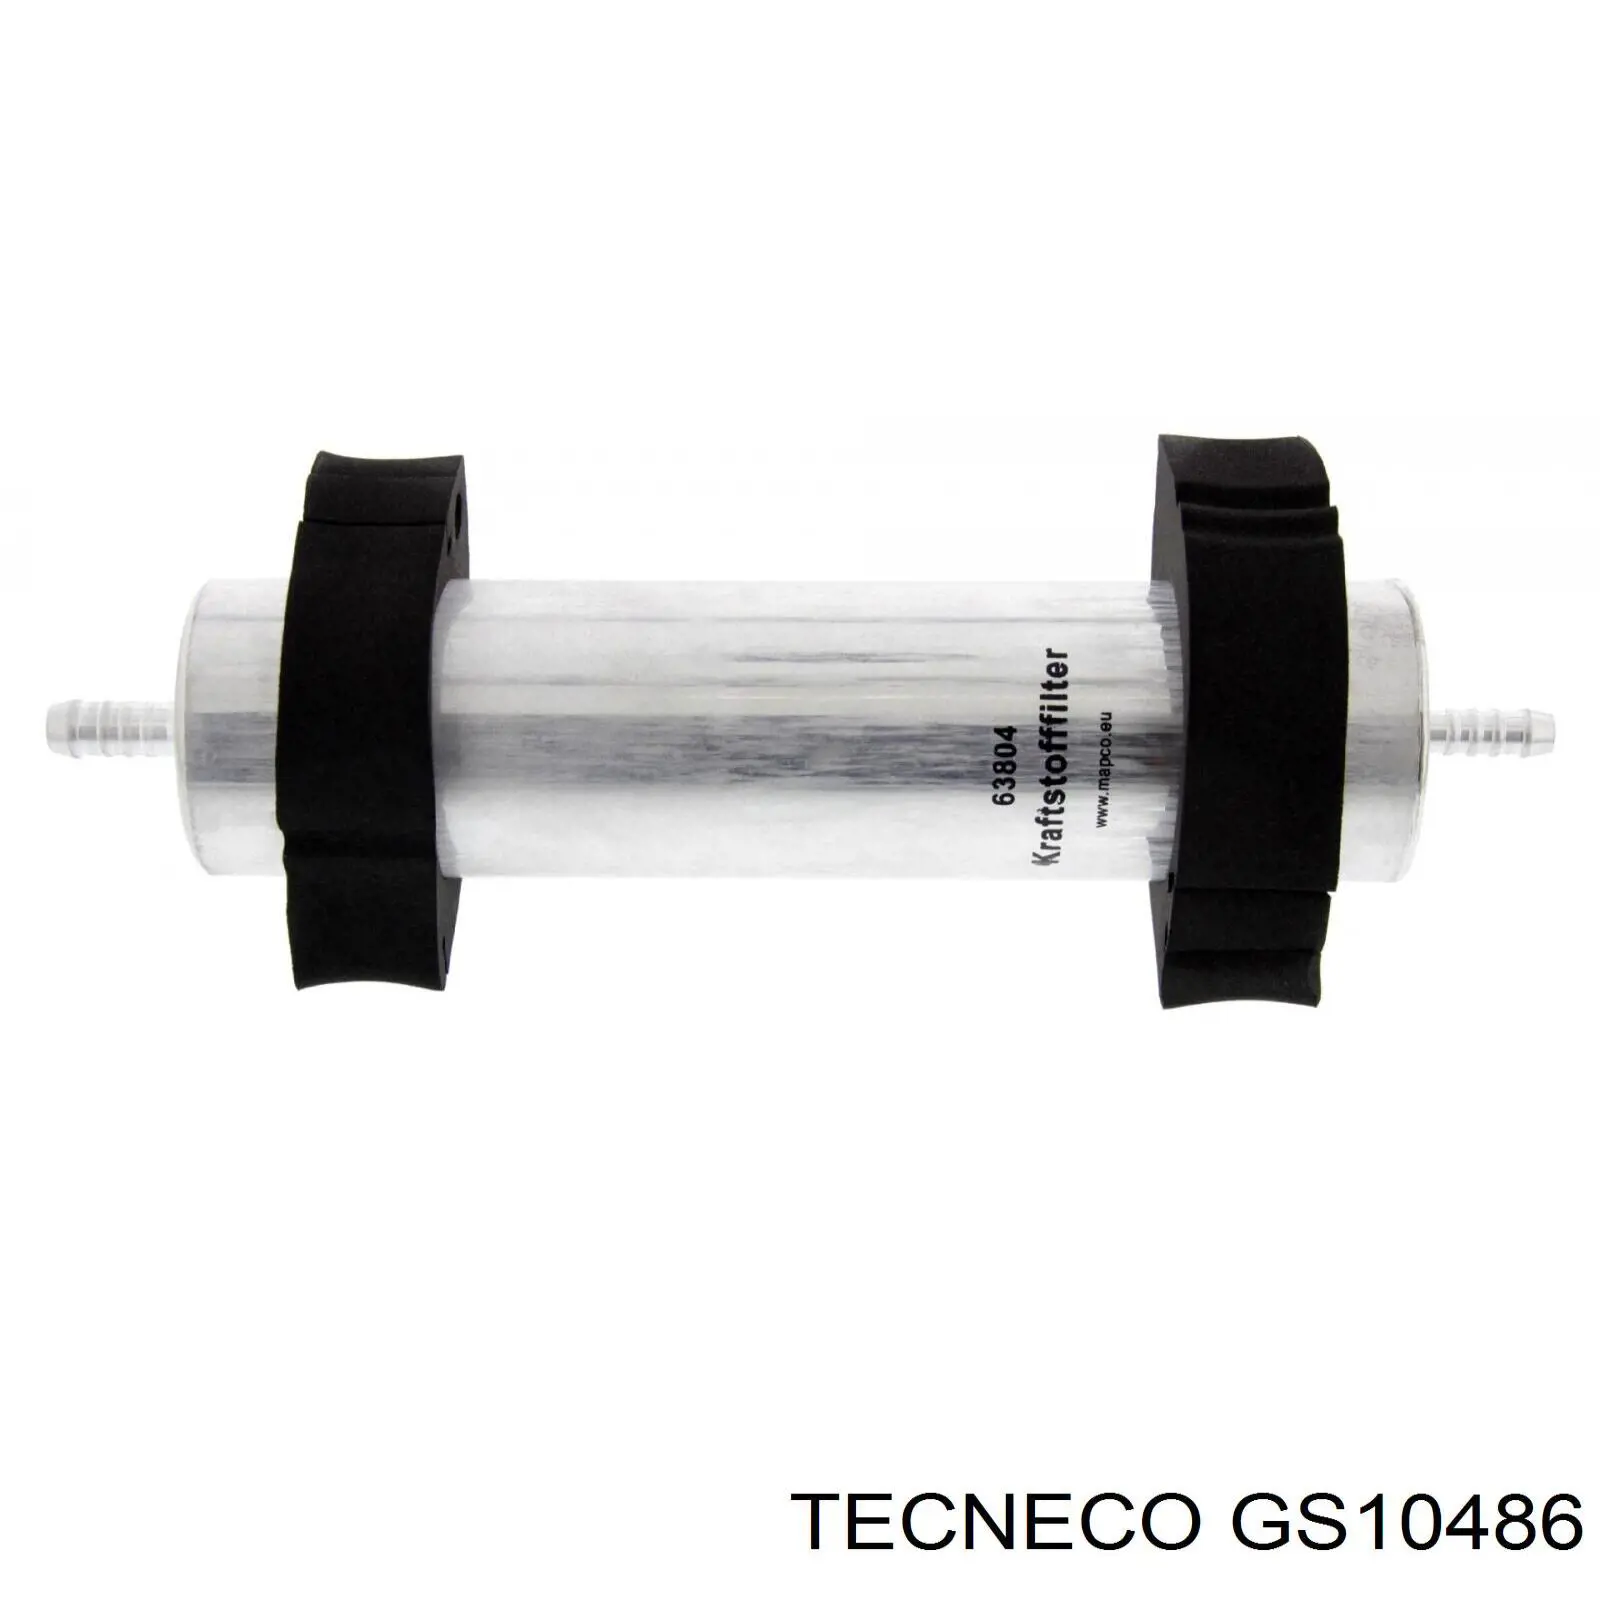 GS10486 Tecneco filtro combustible